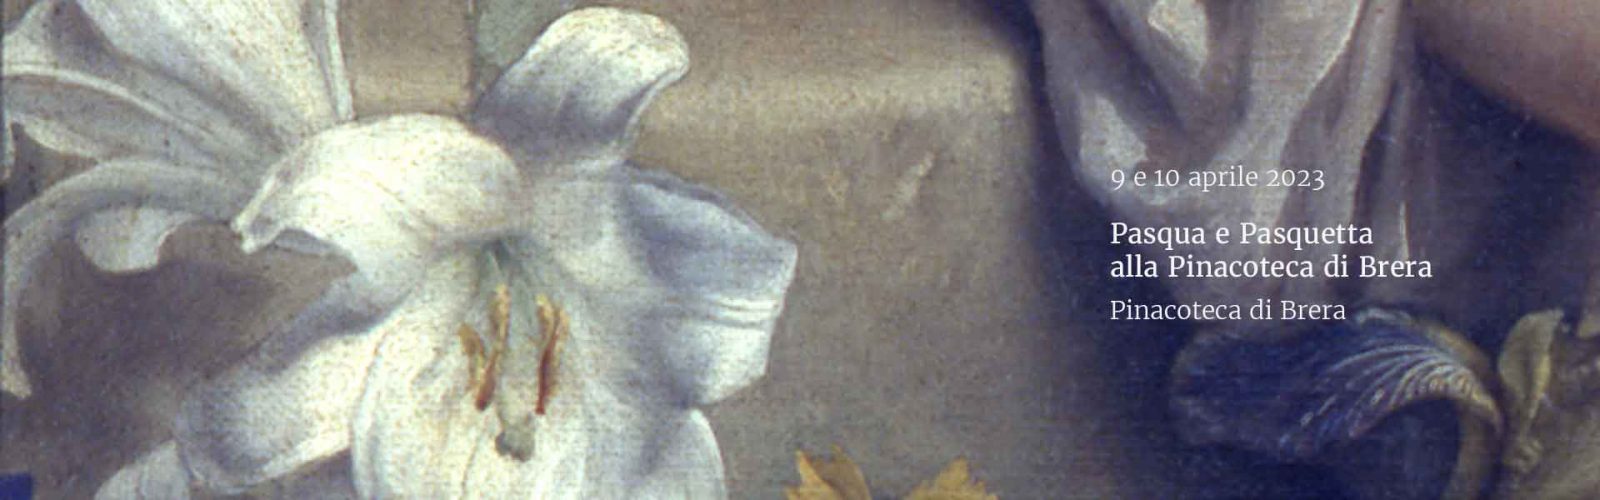 Pasqua e Pasquetta<br>alla Pinacoteca di Brera